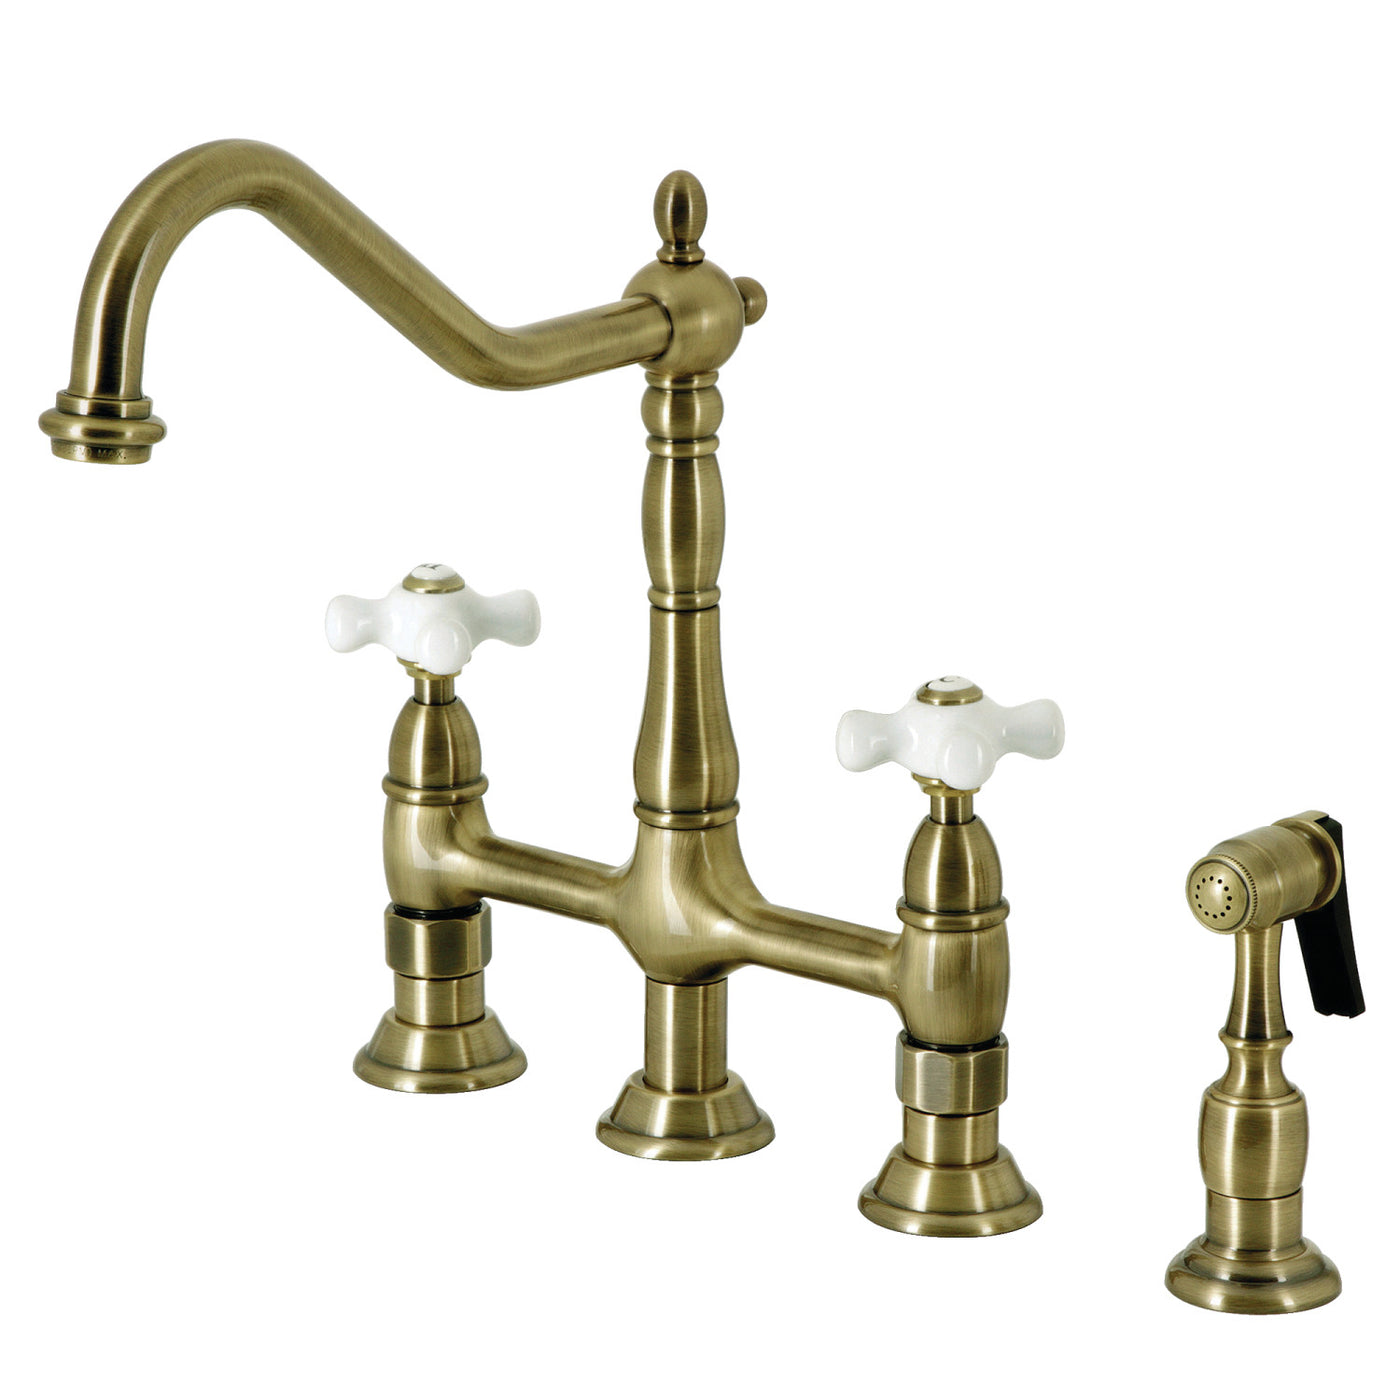 Elements of Design ES1273PXBS Bridge Kitchen Faucet with Brass Sprayer, Antique Brass